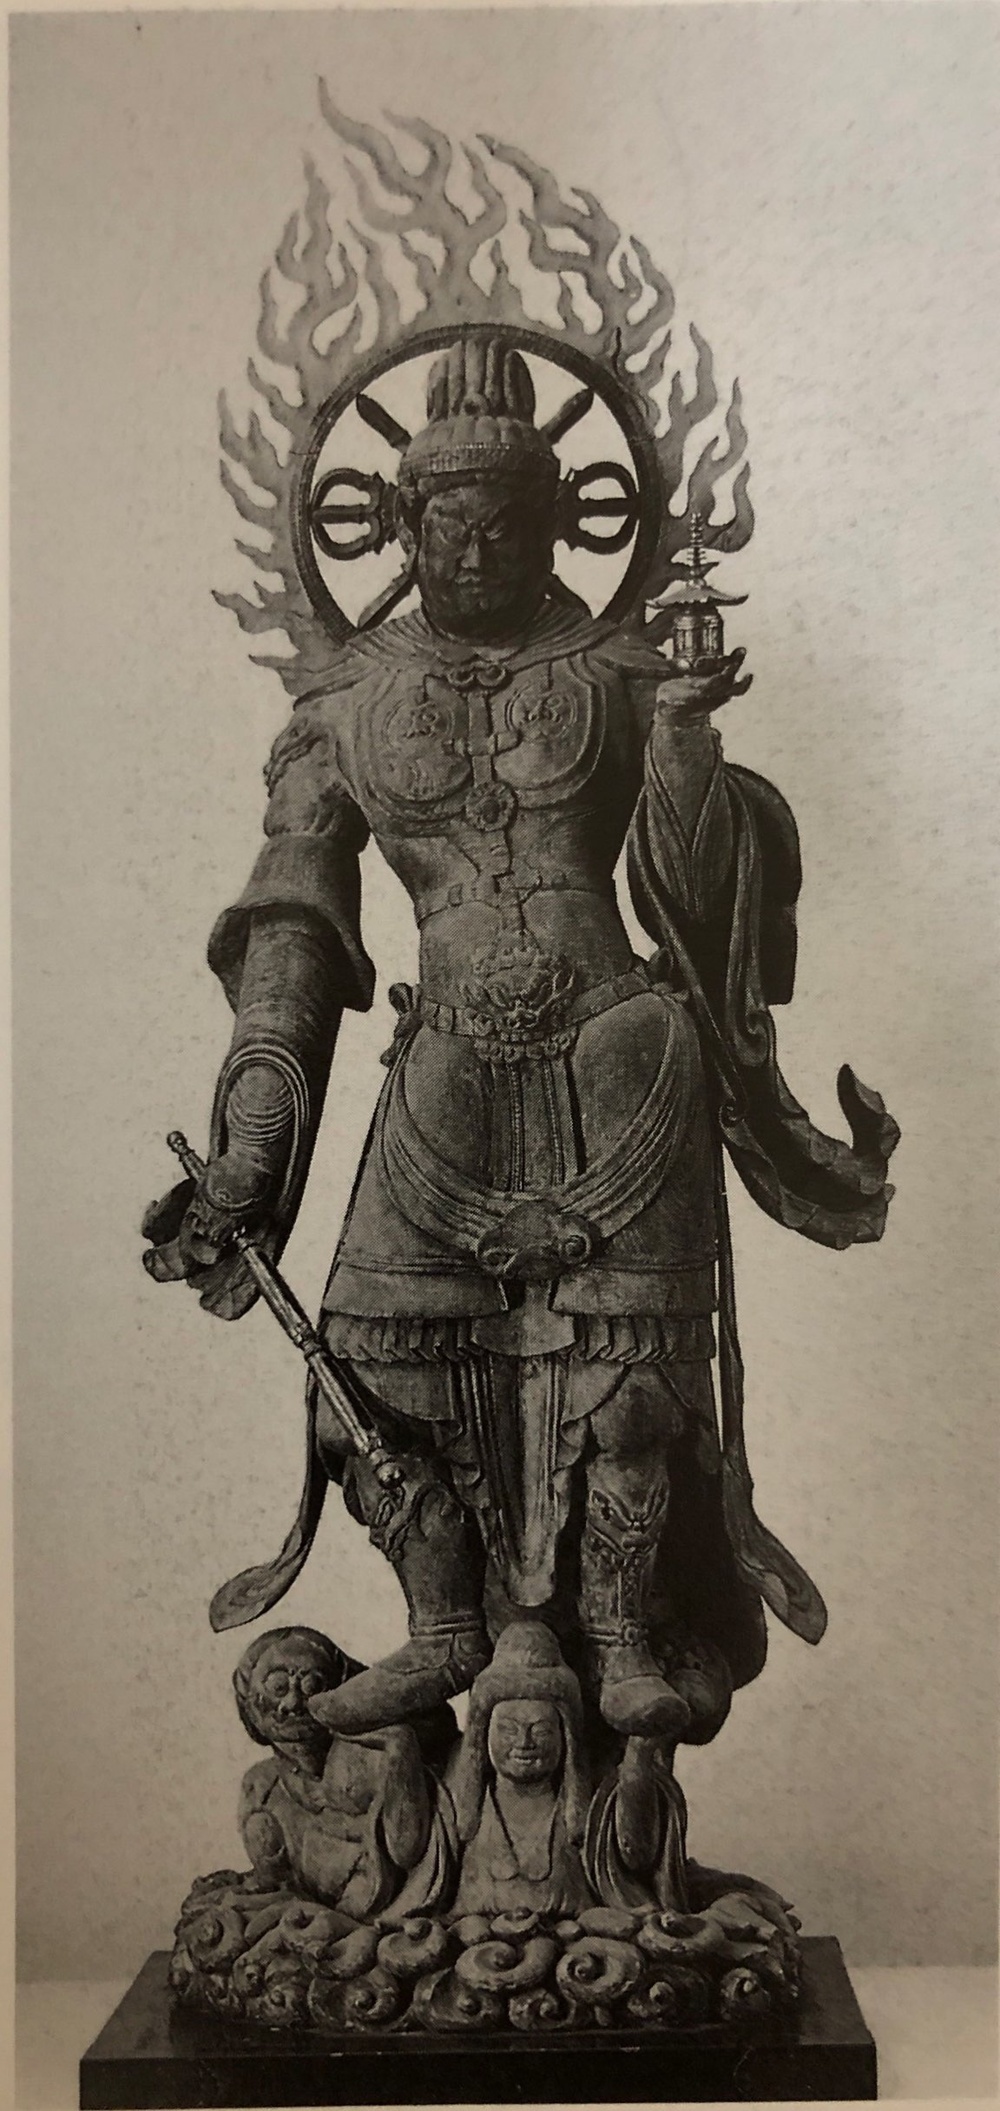 毘沙門天溯源：来自古代印度的天王为何成了日本的军神？ | 机核GCORES